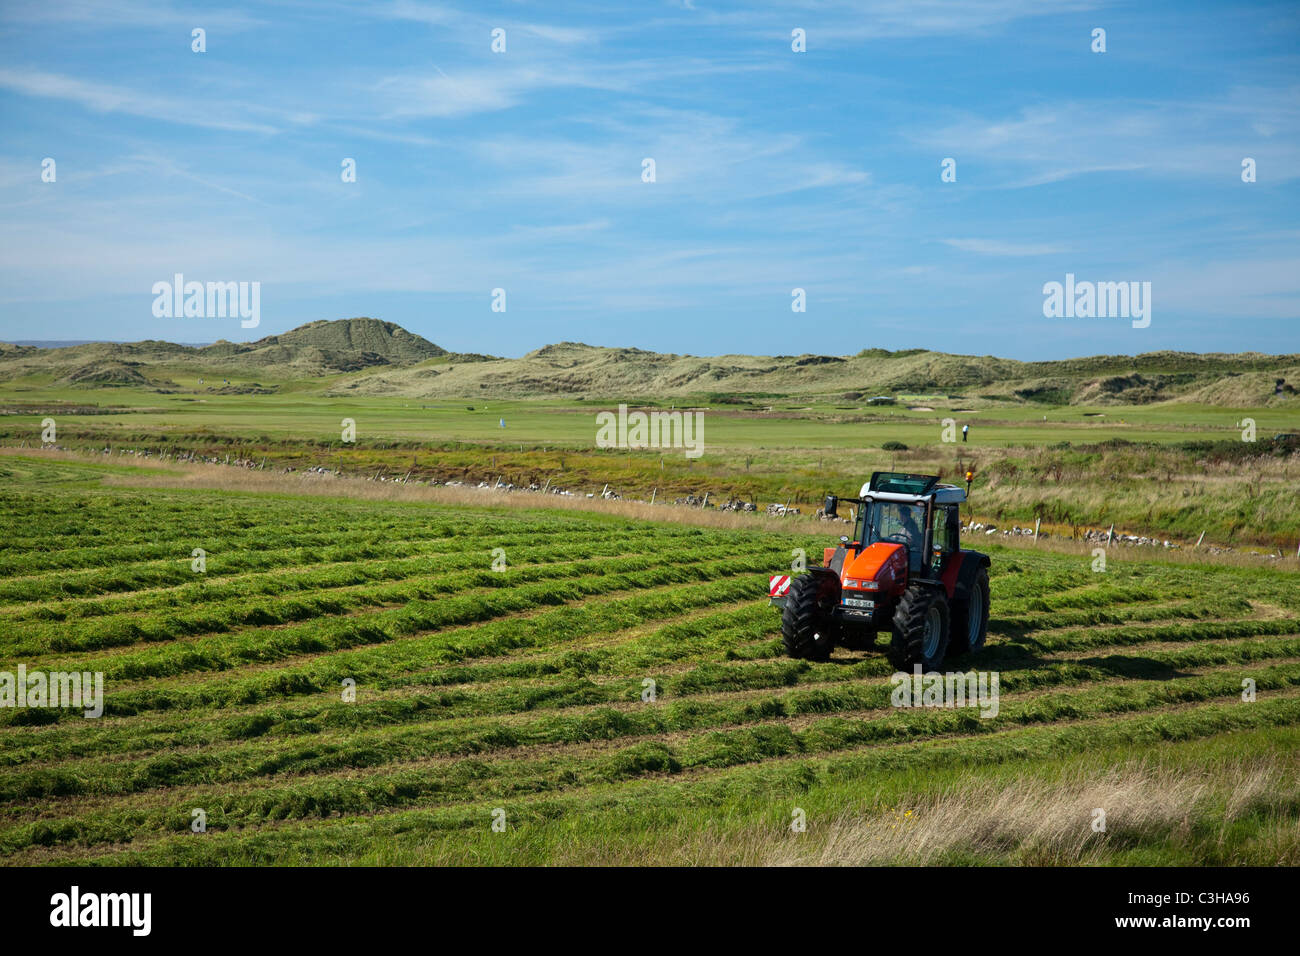 Traktor in einem Feld schneiden Silage, Enniscrone, County Sligo, Irland. Stockfoto